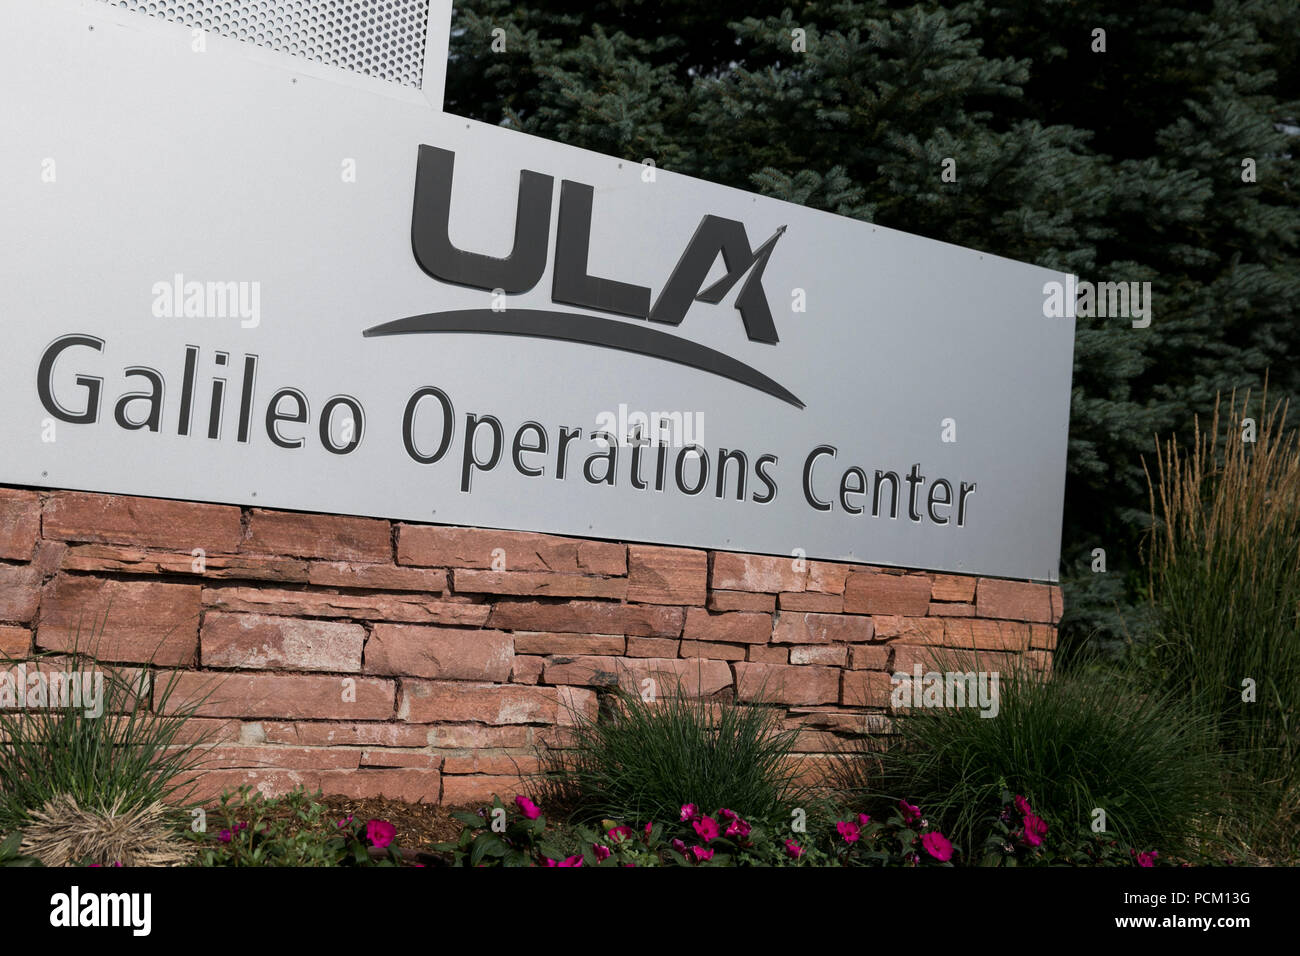 Un logotipo cartel fuera de una instalación ocupada por United Launch Alliance (ULA) en Centennial, Colorado, el 22 de julio de 2018. Foto de stock